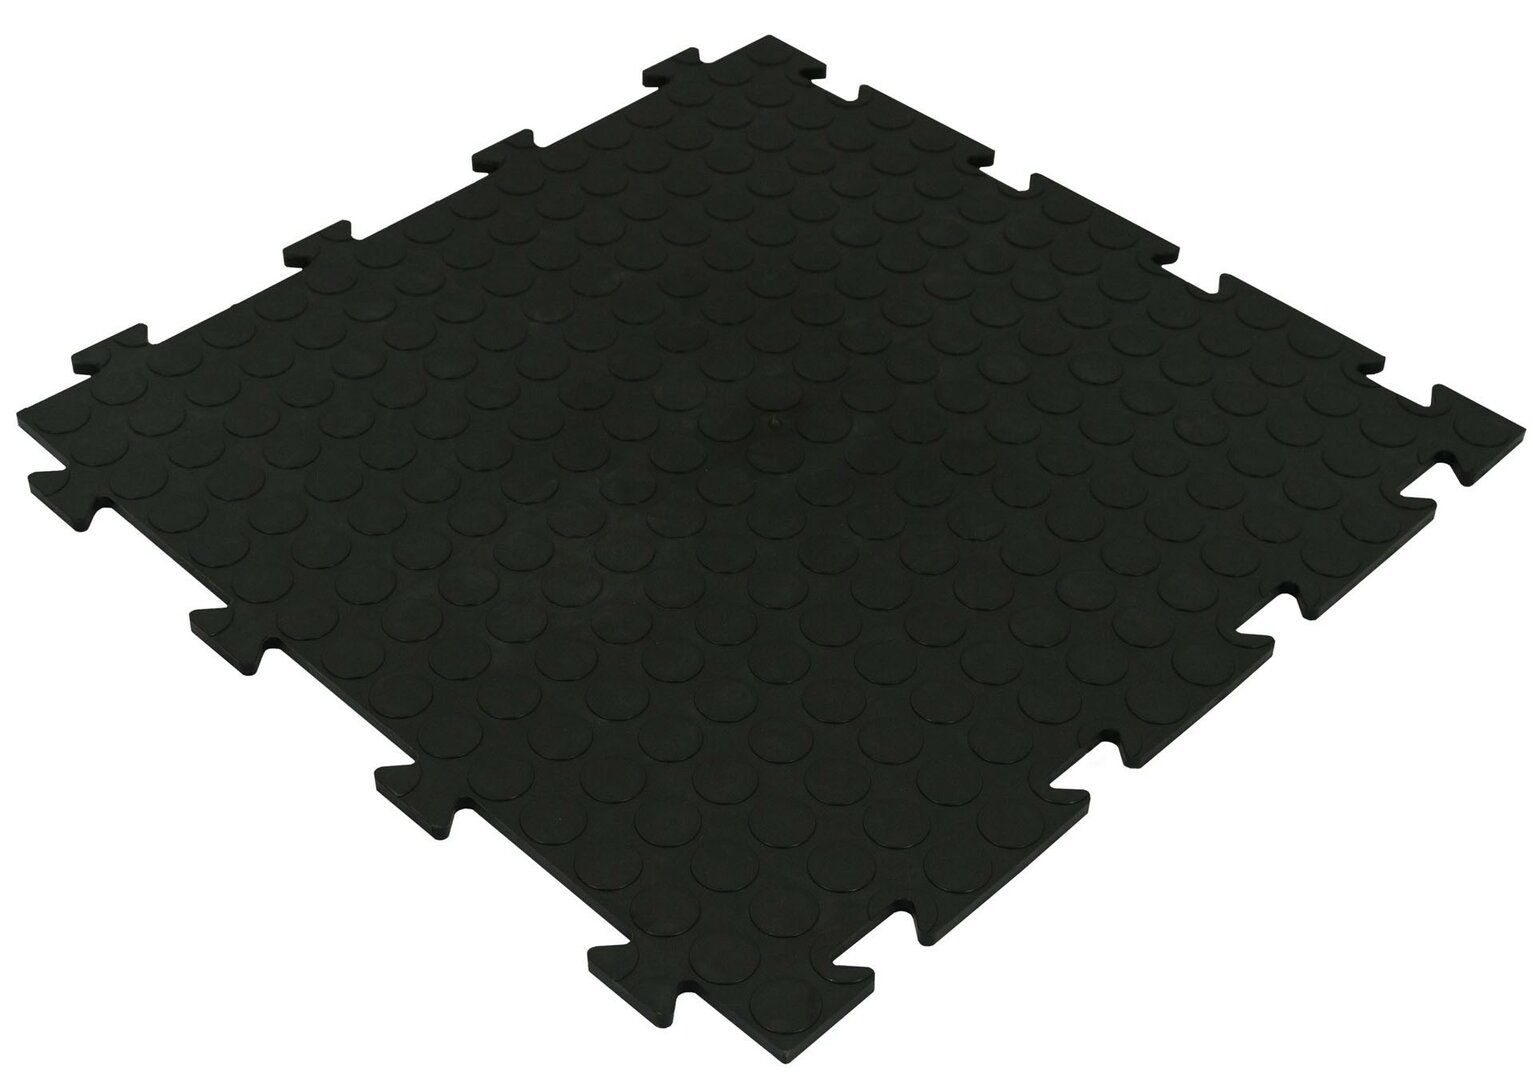 Černá PVC vinylová zátěžová puzzle protiskluzová dlažba Tenax (bubbles) - délka 47,5 cm, šířka 47,5 cm, výška 0,8 cm